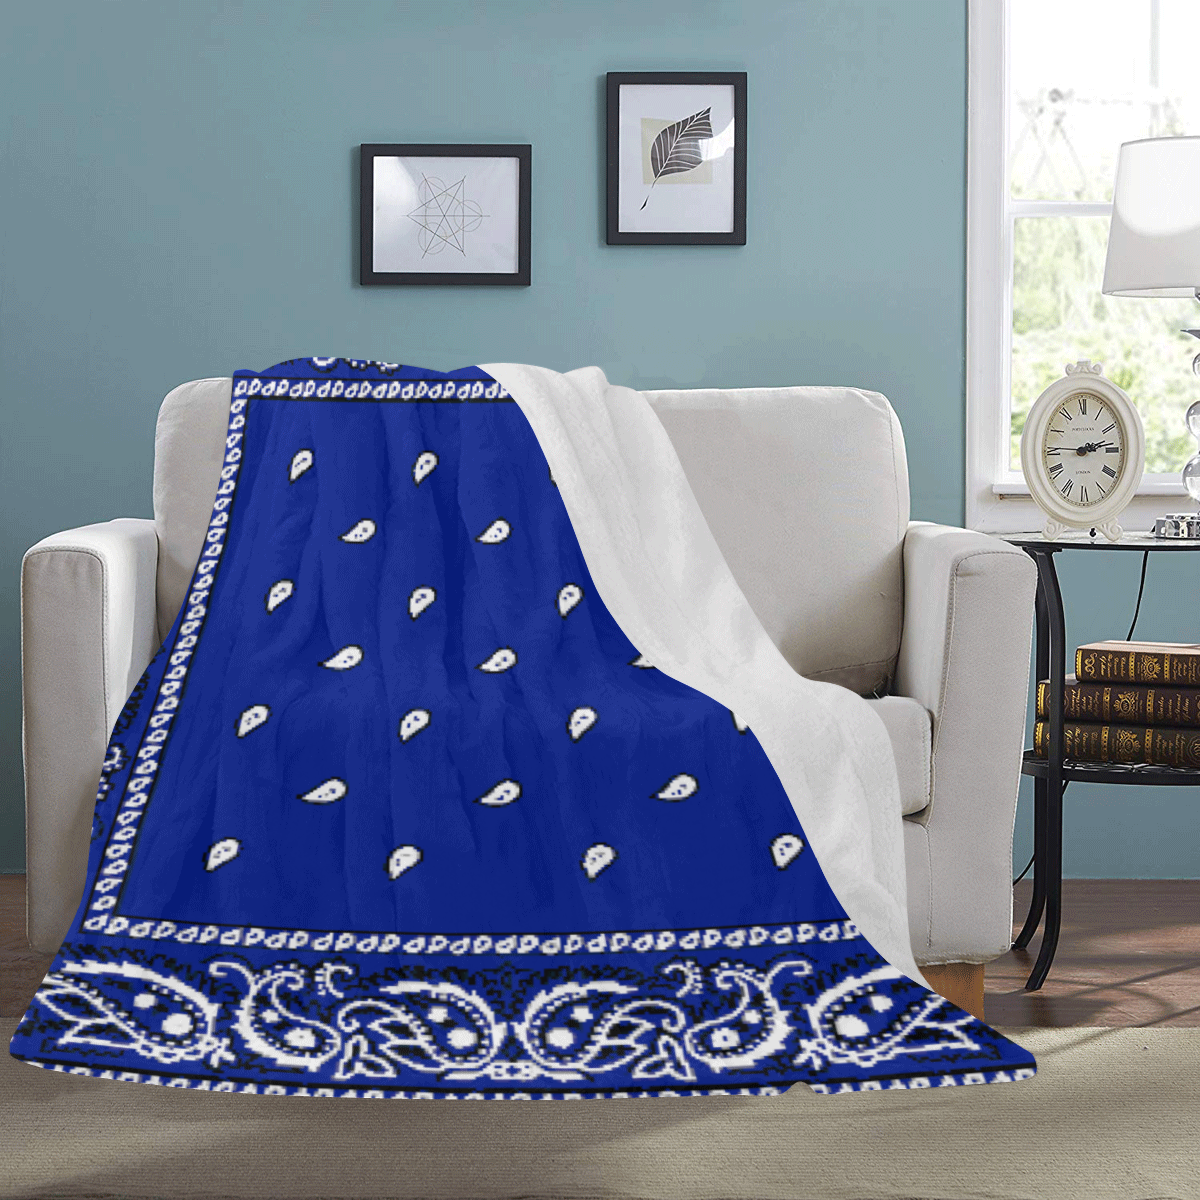 KERCHIEF PATTERN BLUE Ultra-Soft Micro Fleece Blanket 60"x80"